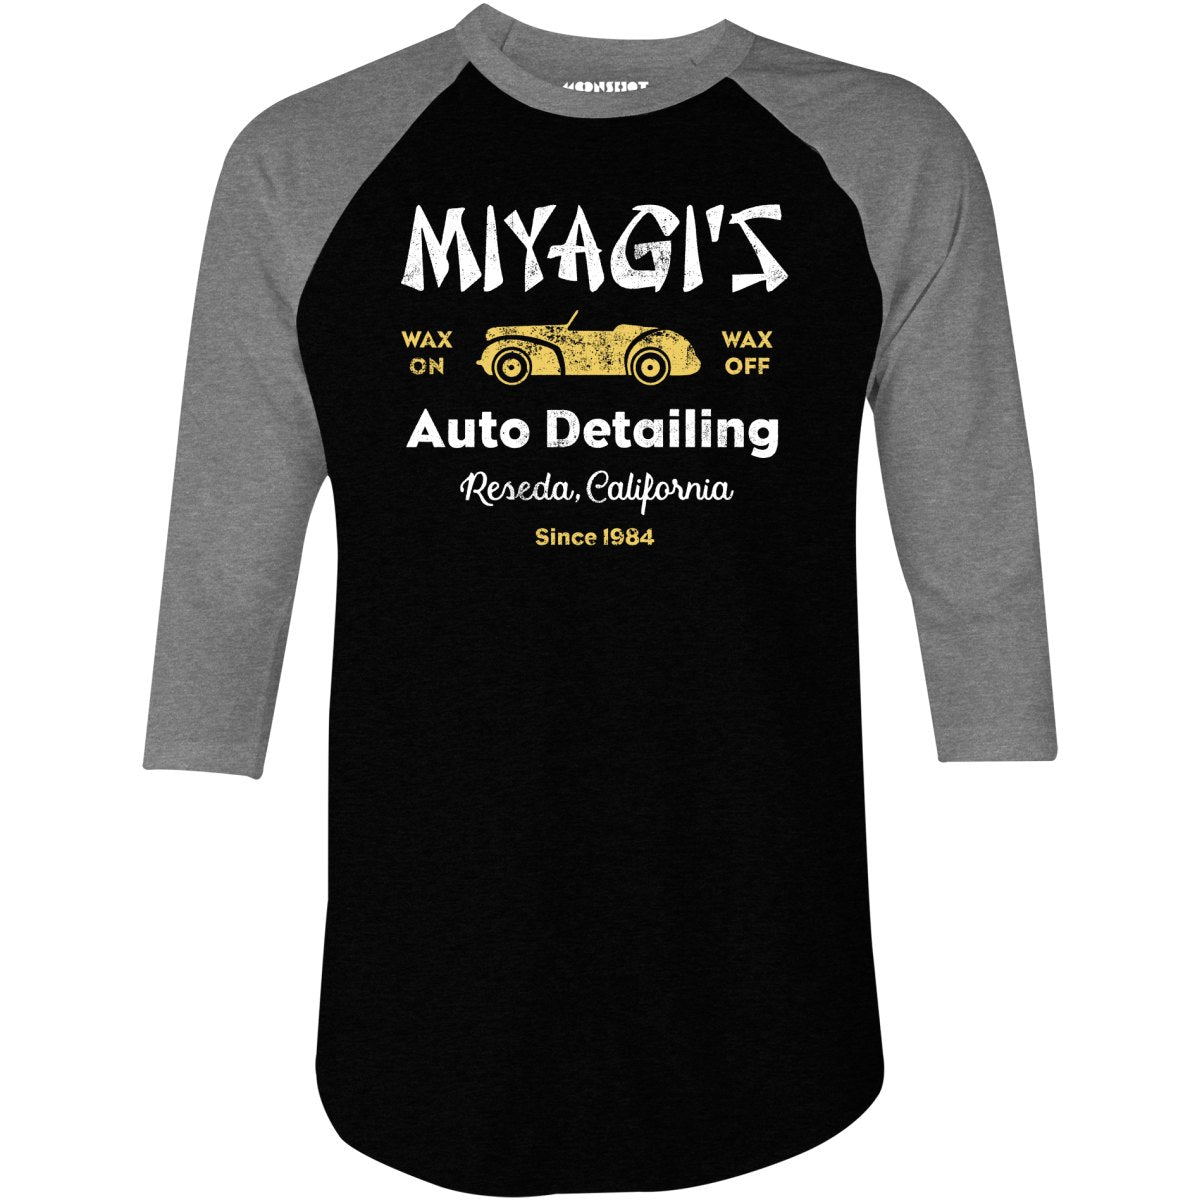 Miyagi's Auto Detailing - 3/4 Sleeve Raglan T-Shirt